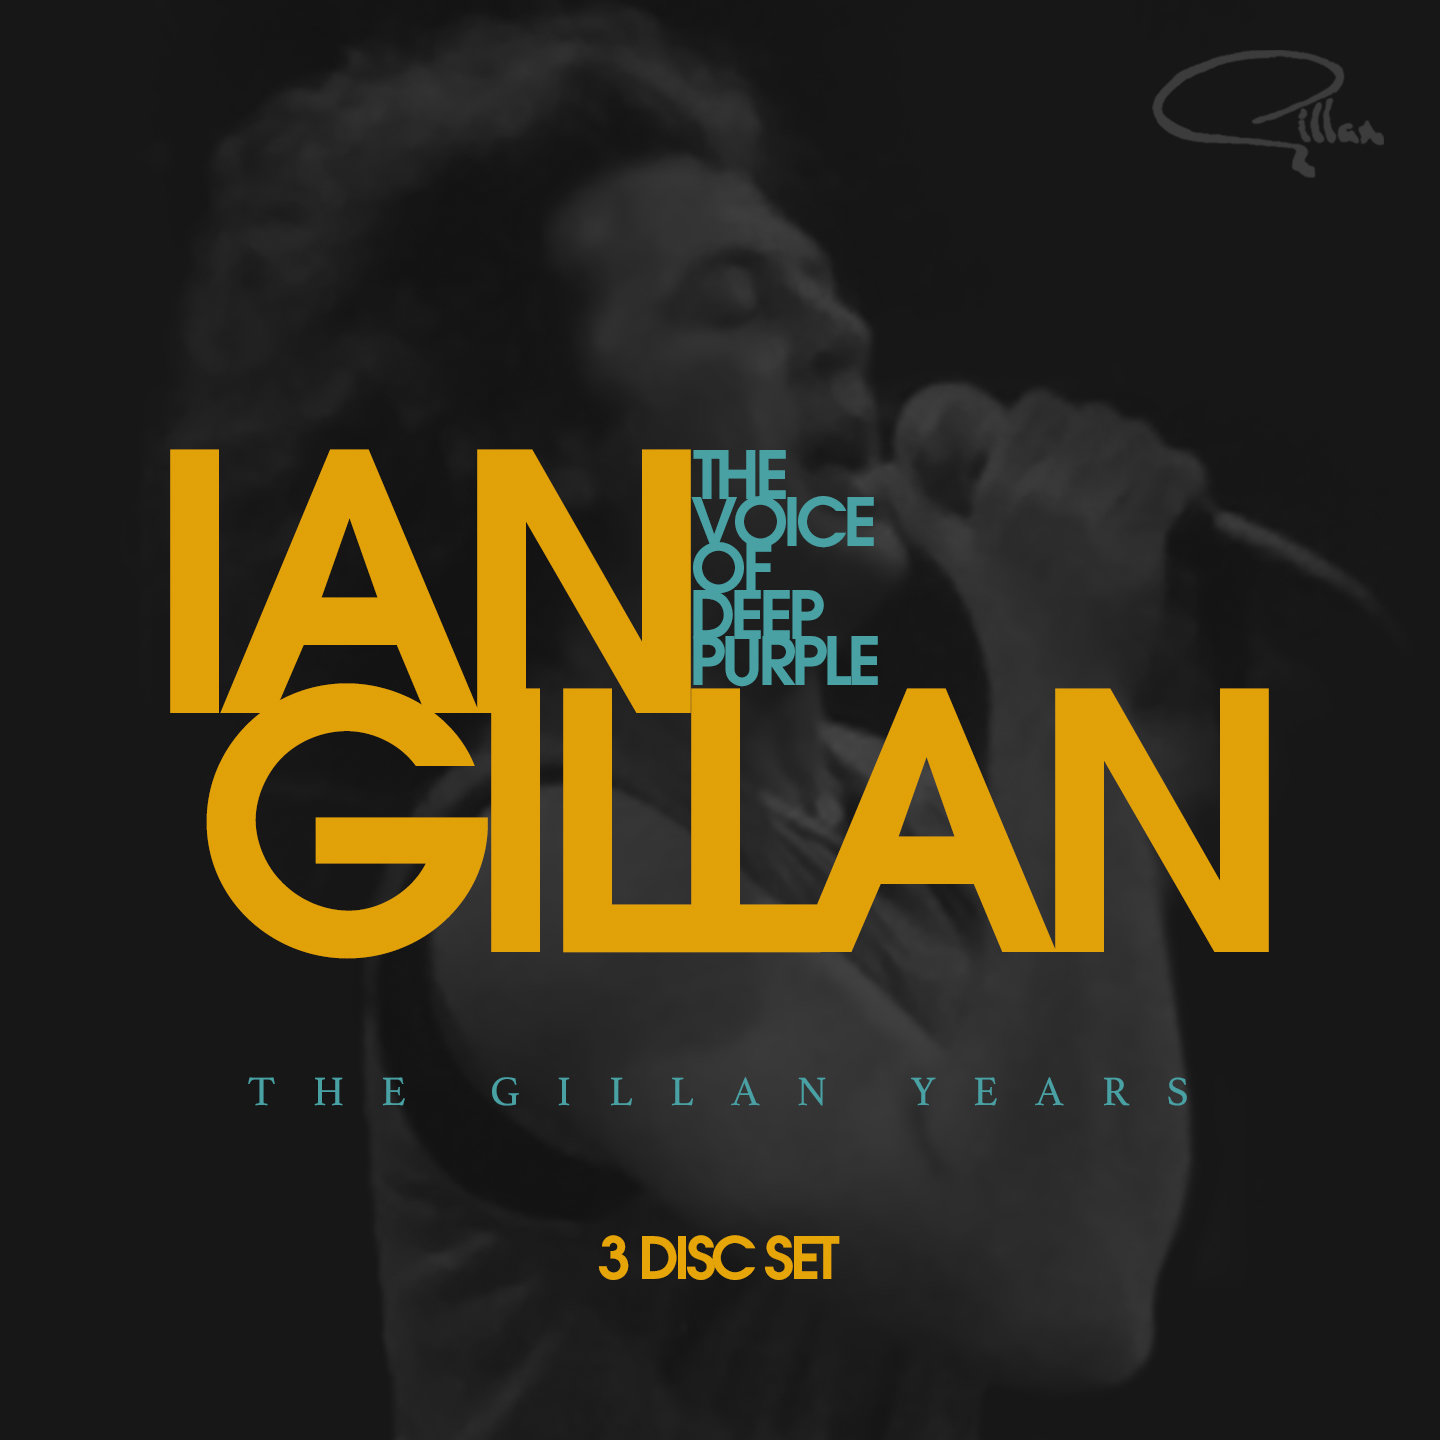 Ian Gillan - The Voice of Deep Purple - The Gillan Years